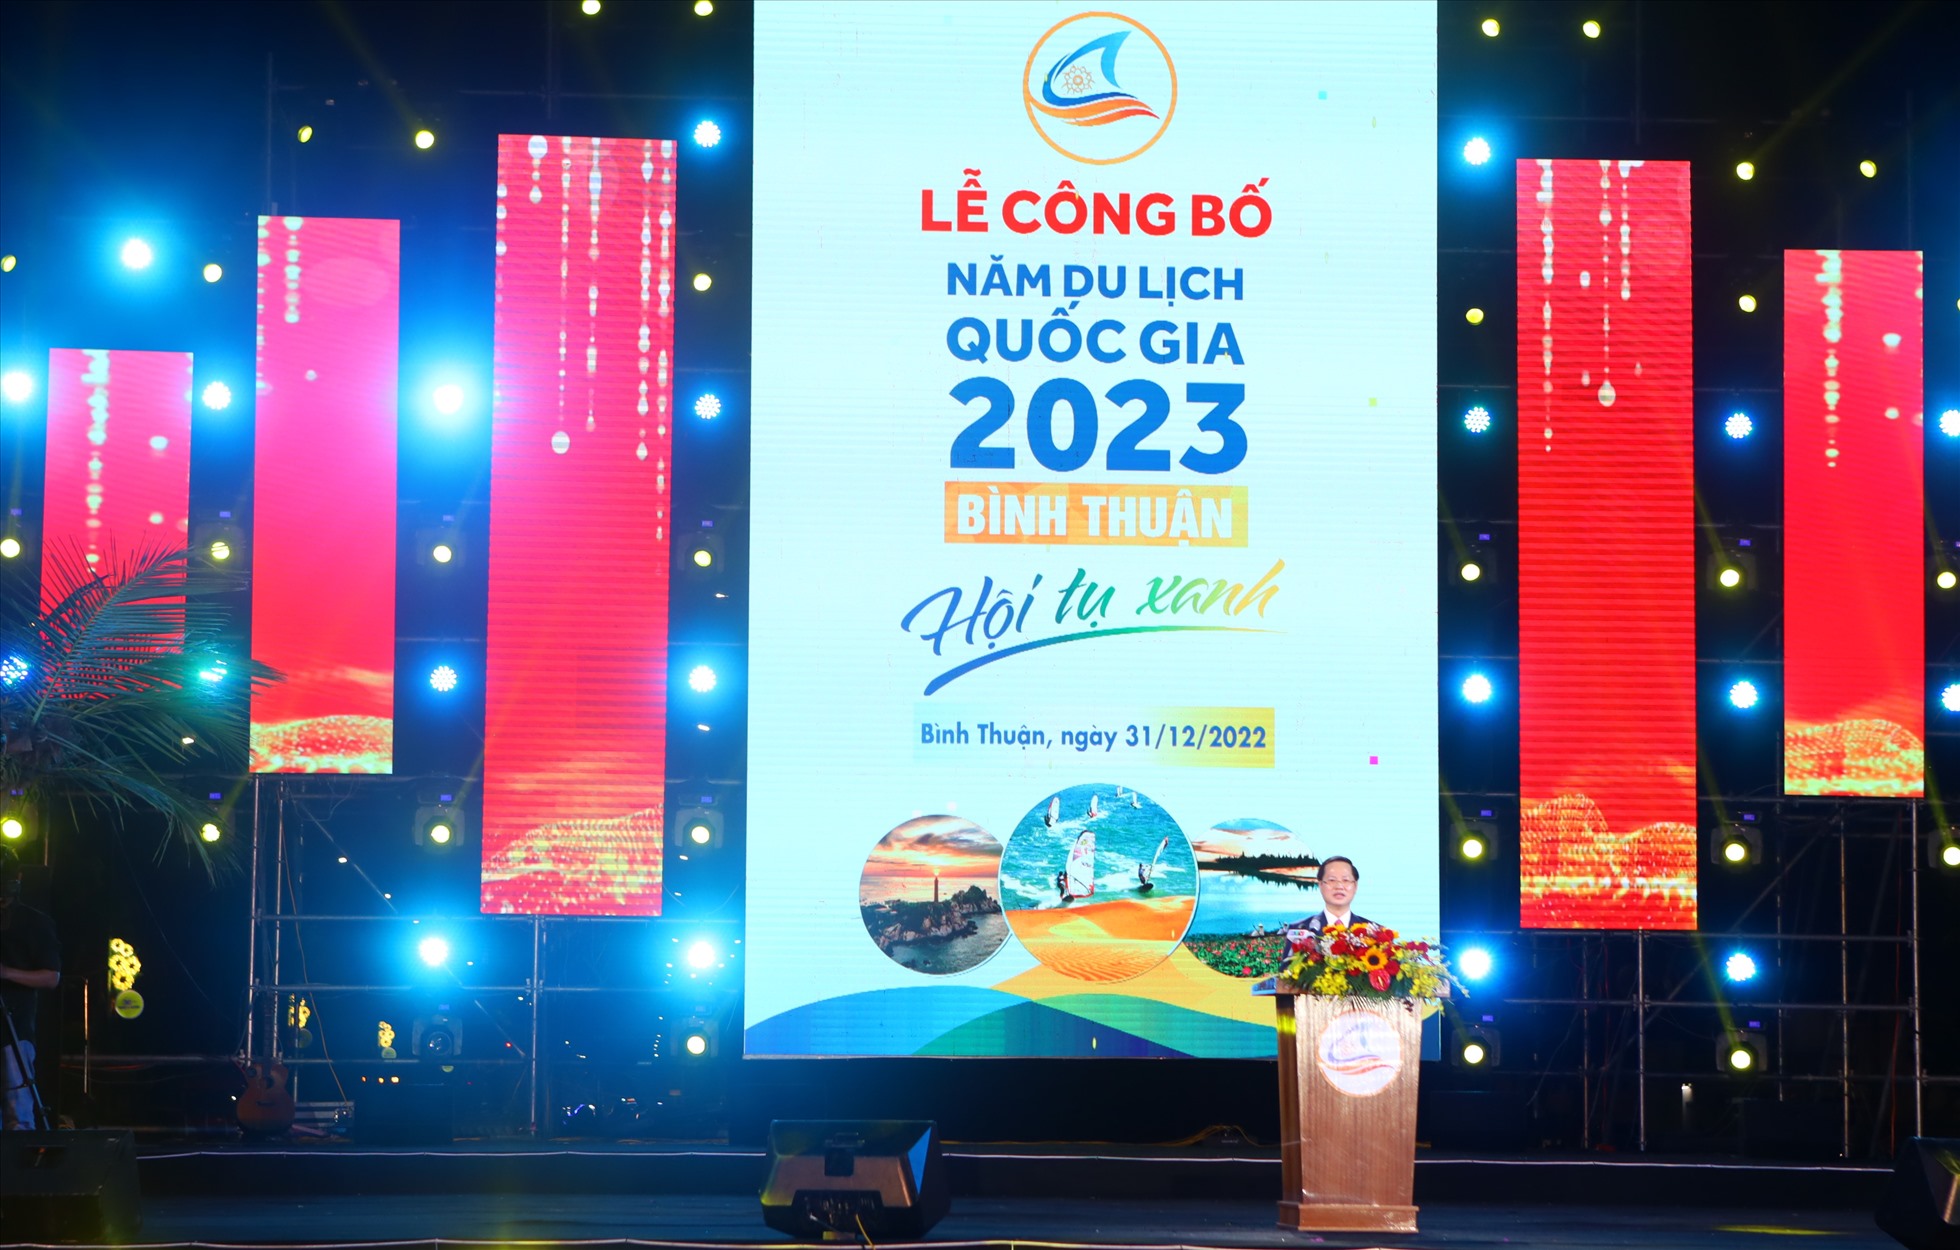 Ông Đoàn Anh Dũng, Chủ tịch UBND tỉnh Bình Thuận phát biểu tuyên bố Năm Du lịch quốc gia 2023 “Bình Thuận - Hội tụ xanh” chính thức khởi động. Ảnh: Duy Tuấn